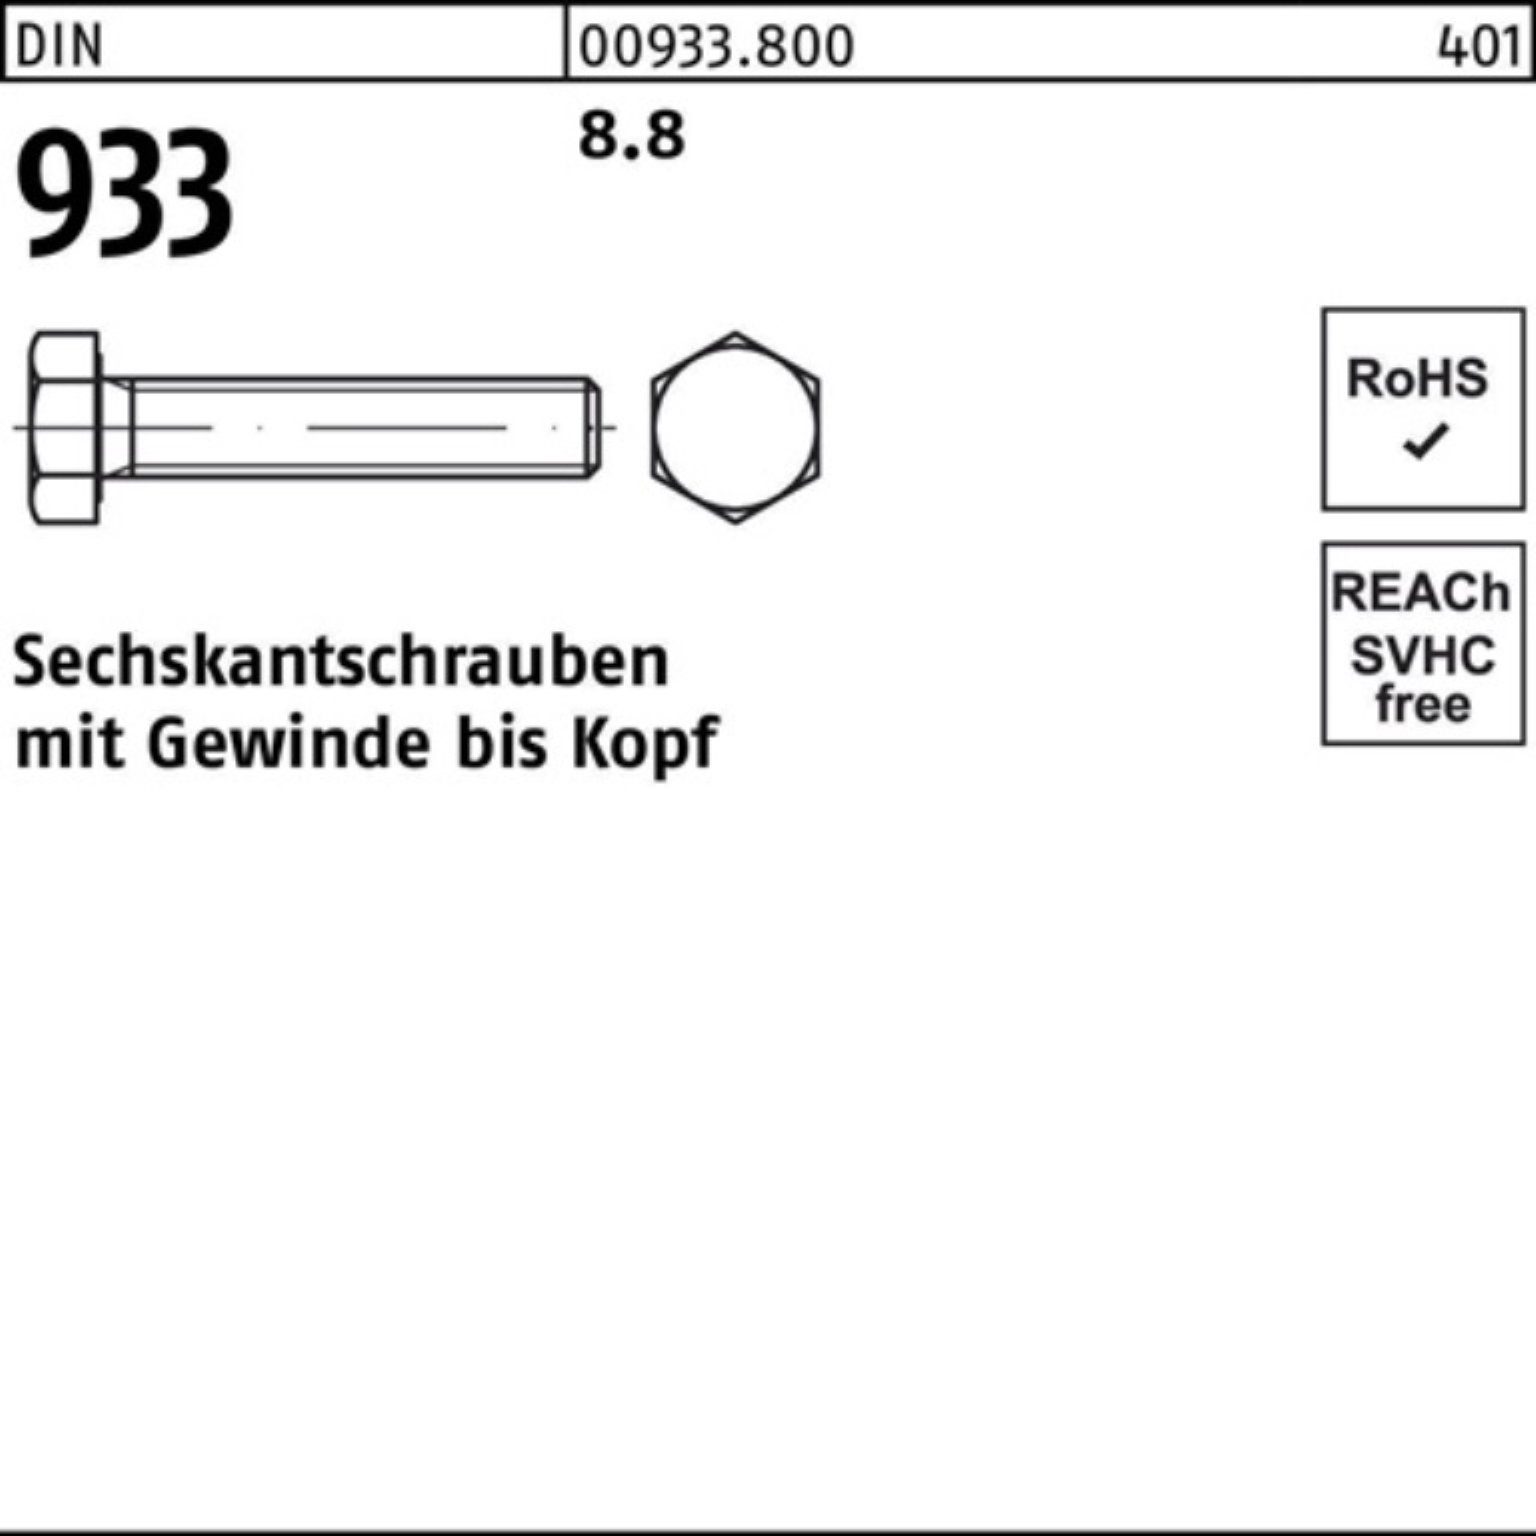 Reyher Sechskantschraube 100er Pack 933 Sechskantschraube VG 933 8.8 Stück 25 DIN M22x DIN 55